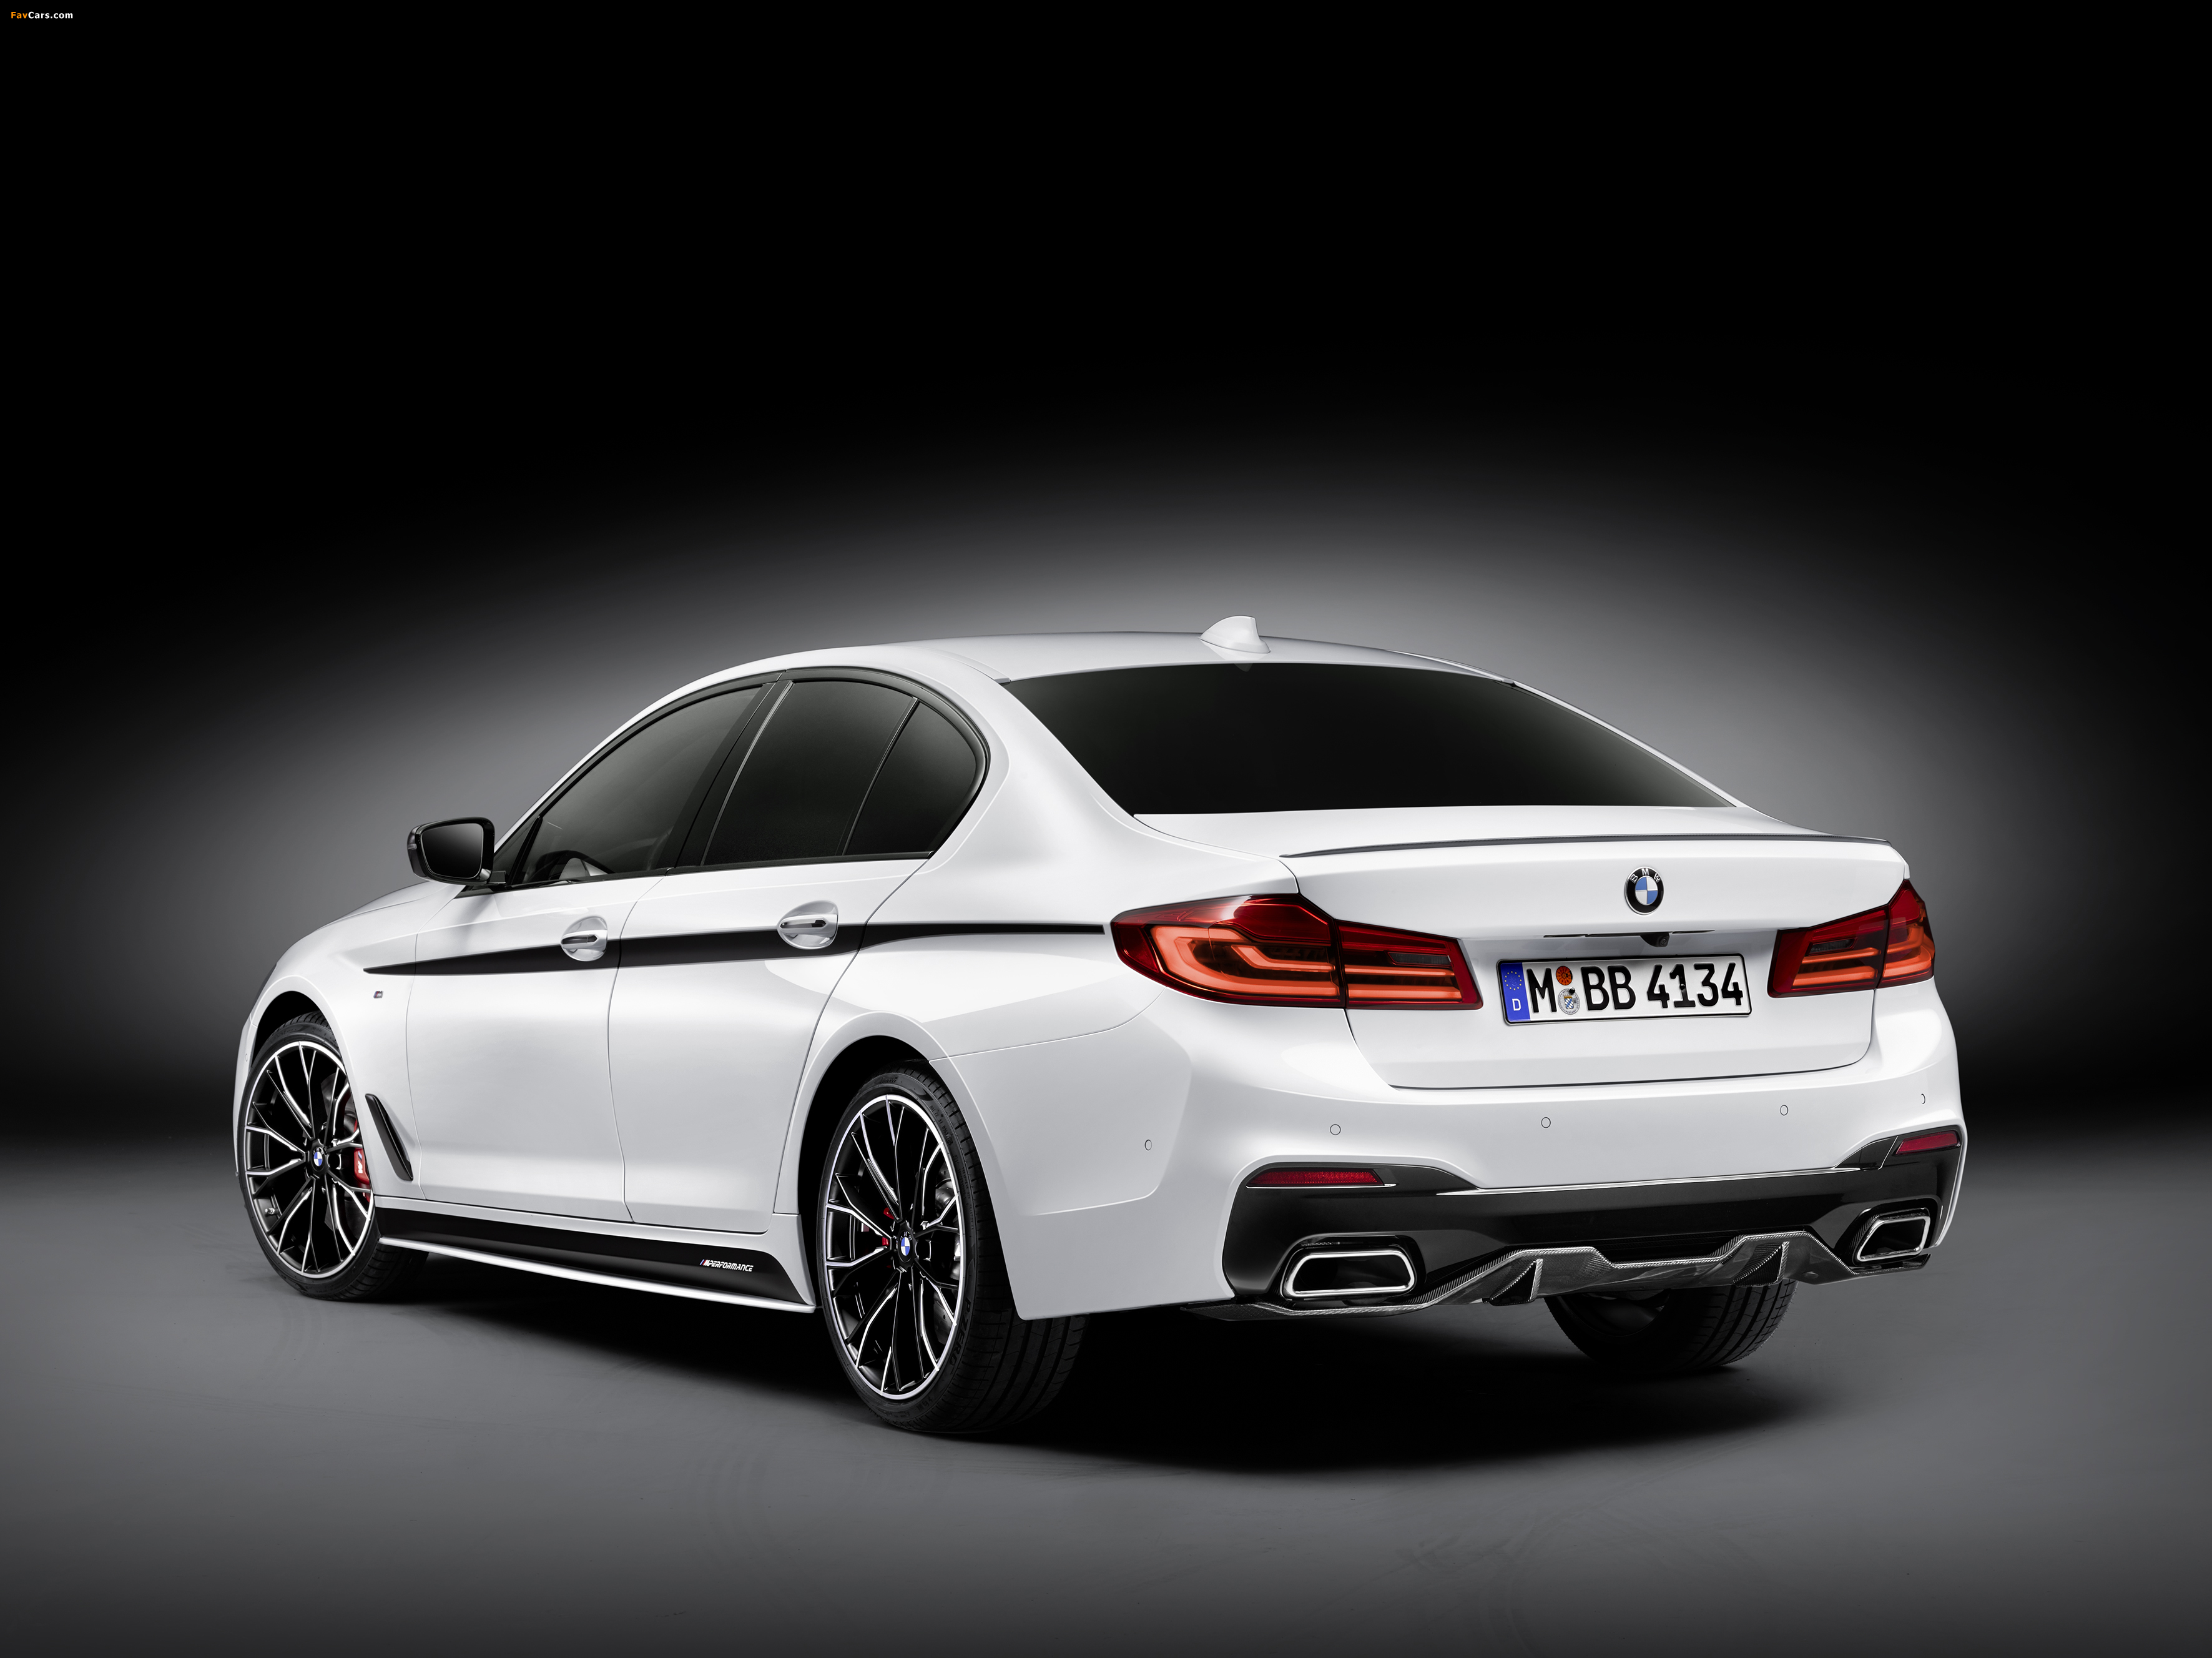 G performance. BMW g30 m Performance. BMW g31 m Performance. BMW g30 универсал. BMW 5 g30 универсал.